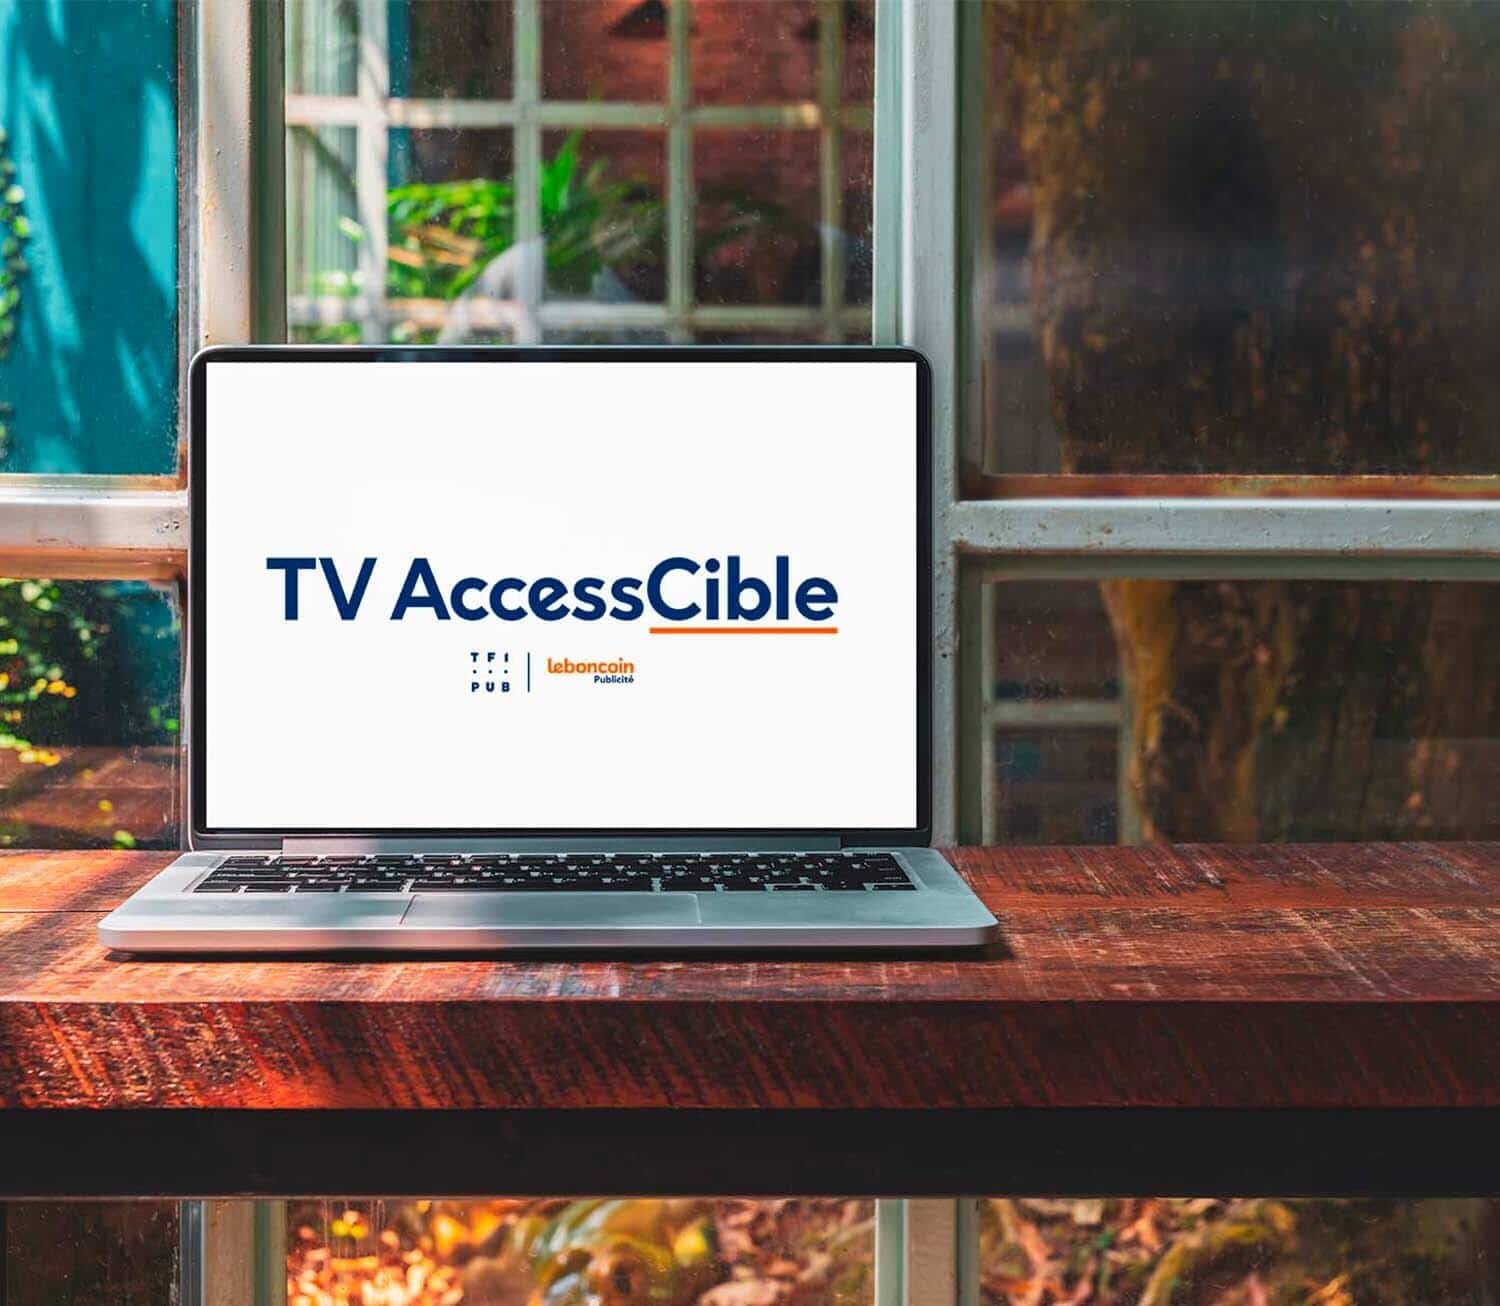 Decouvrir l'offre TV AccessCible sur ordinateur et tele